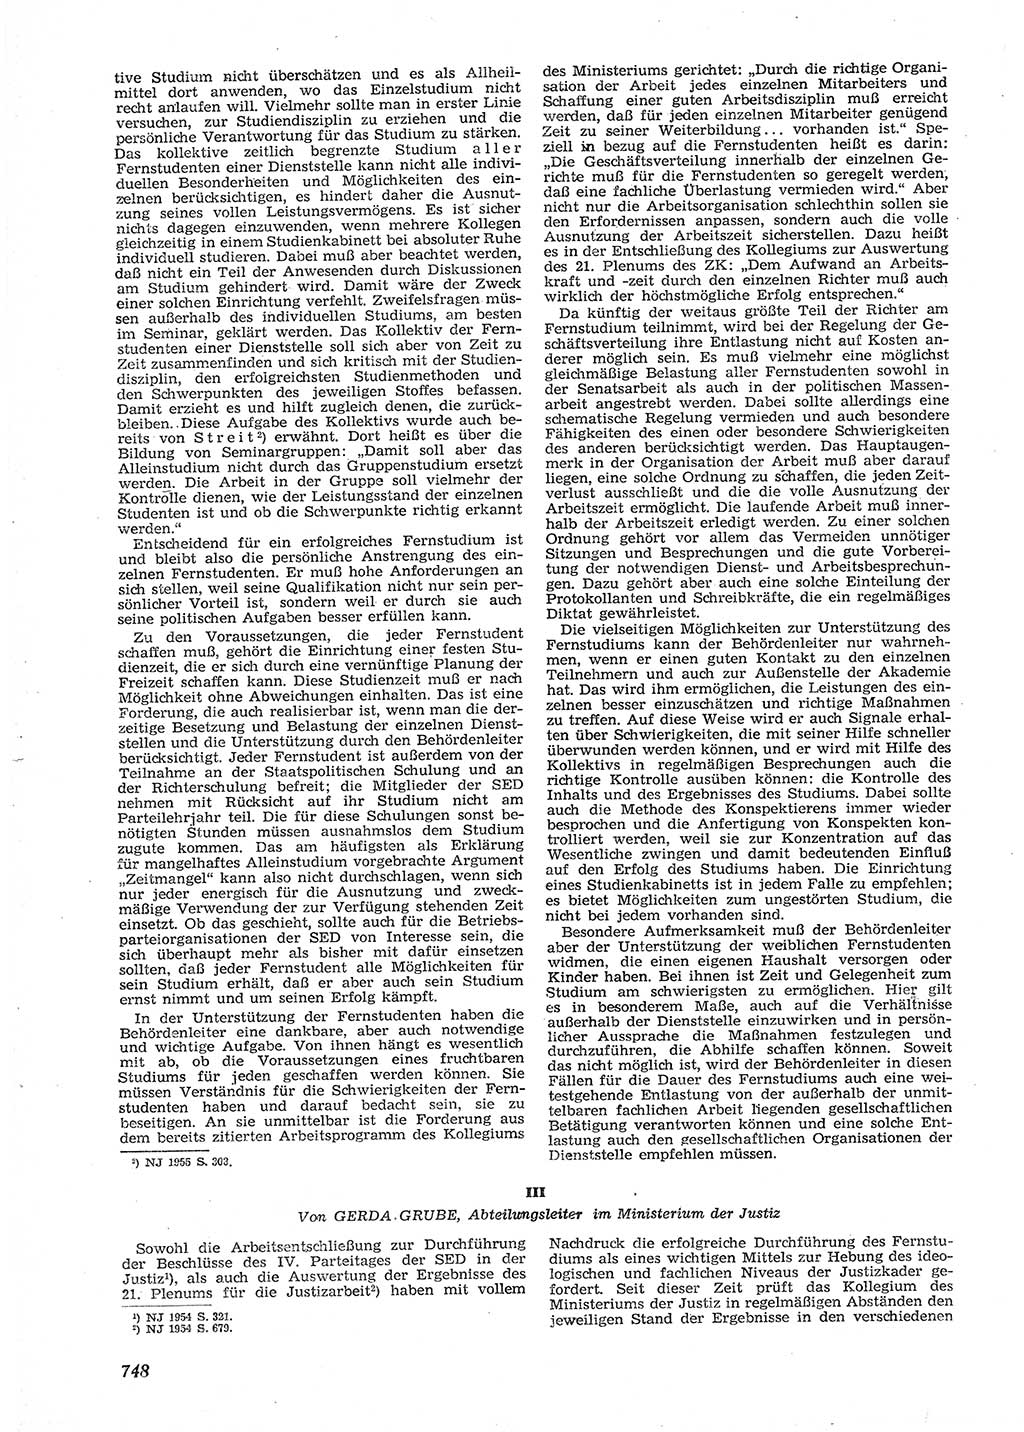 Neue Justiz (NJ), Zeitschrift für Recht und Rechtswissenschaft [Deutsche Demokratische Republik (DDR)], 9. Jahrgang 1955, Seite 748 (NJ DDR 1955, S. 748)